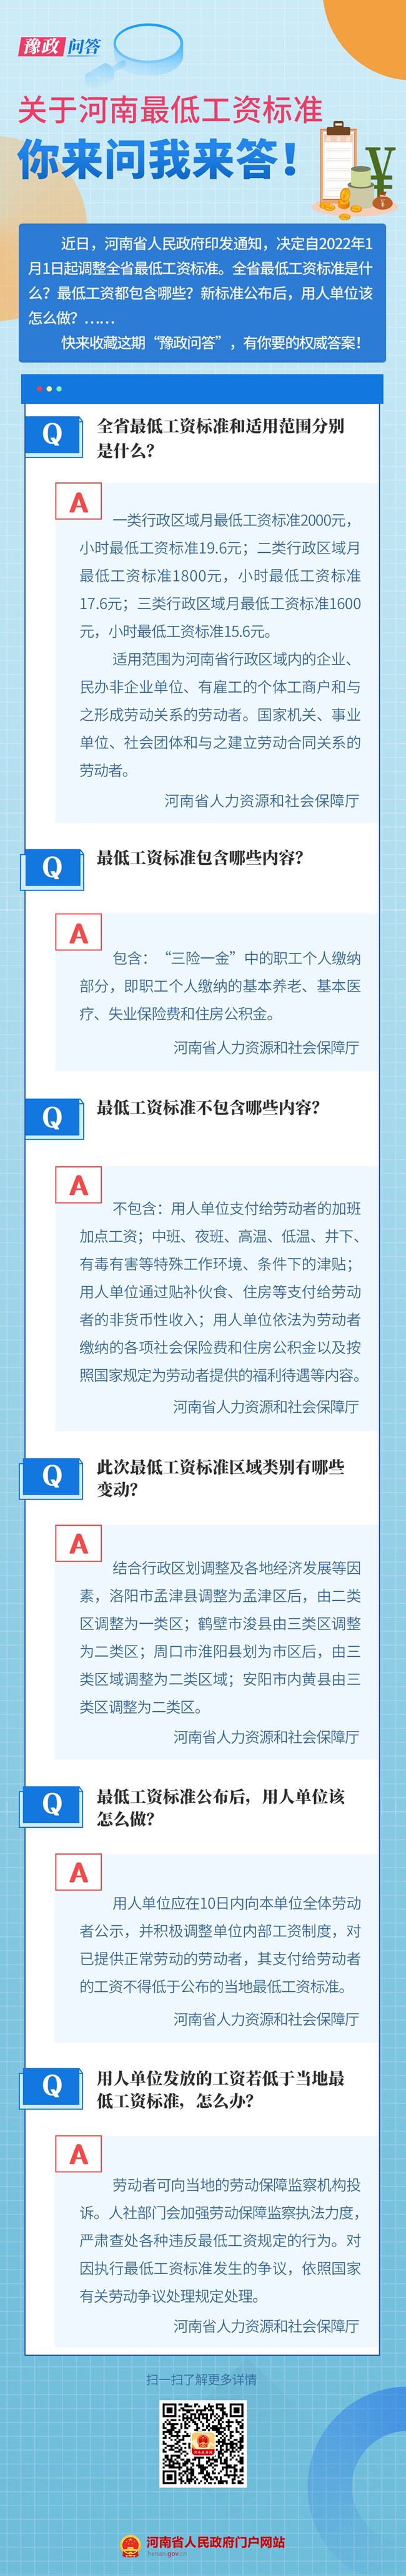 河南省人民政府关于调整河南省最低工资标准的通知